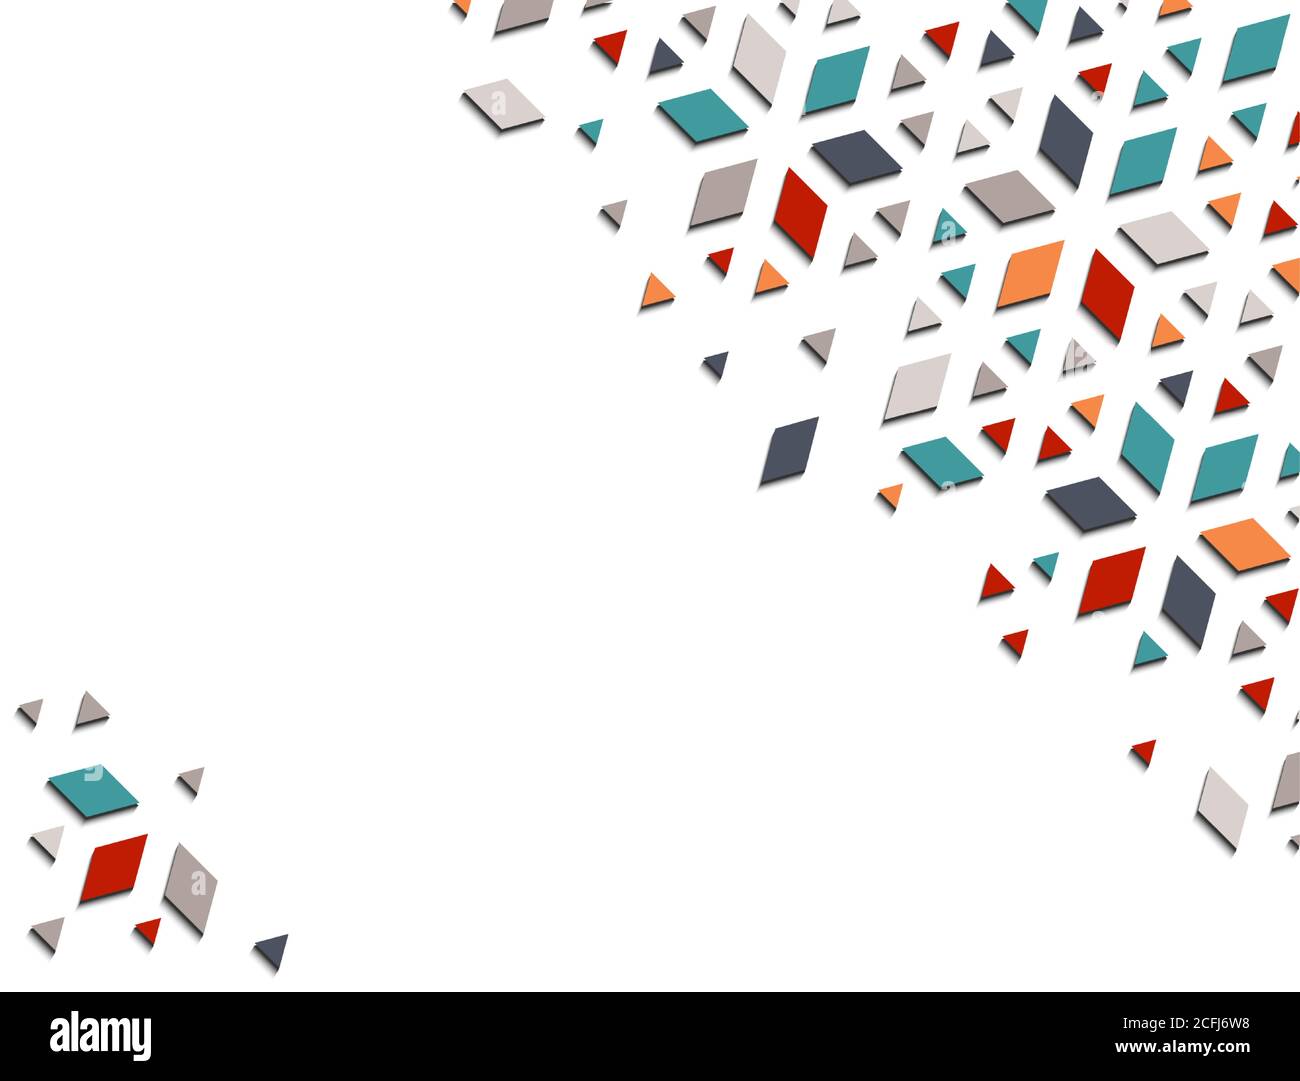 Arabisch 3d isometrische Farbe geometrische Mosaik Vektor-Muster für Hintergrund, Karte, Banner. Geometrisches, kreatives Design. Stock Vektor